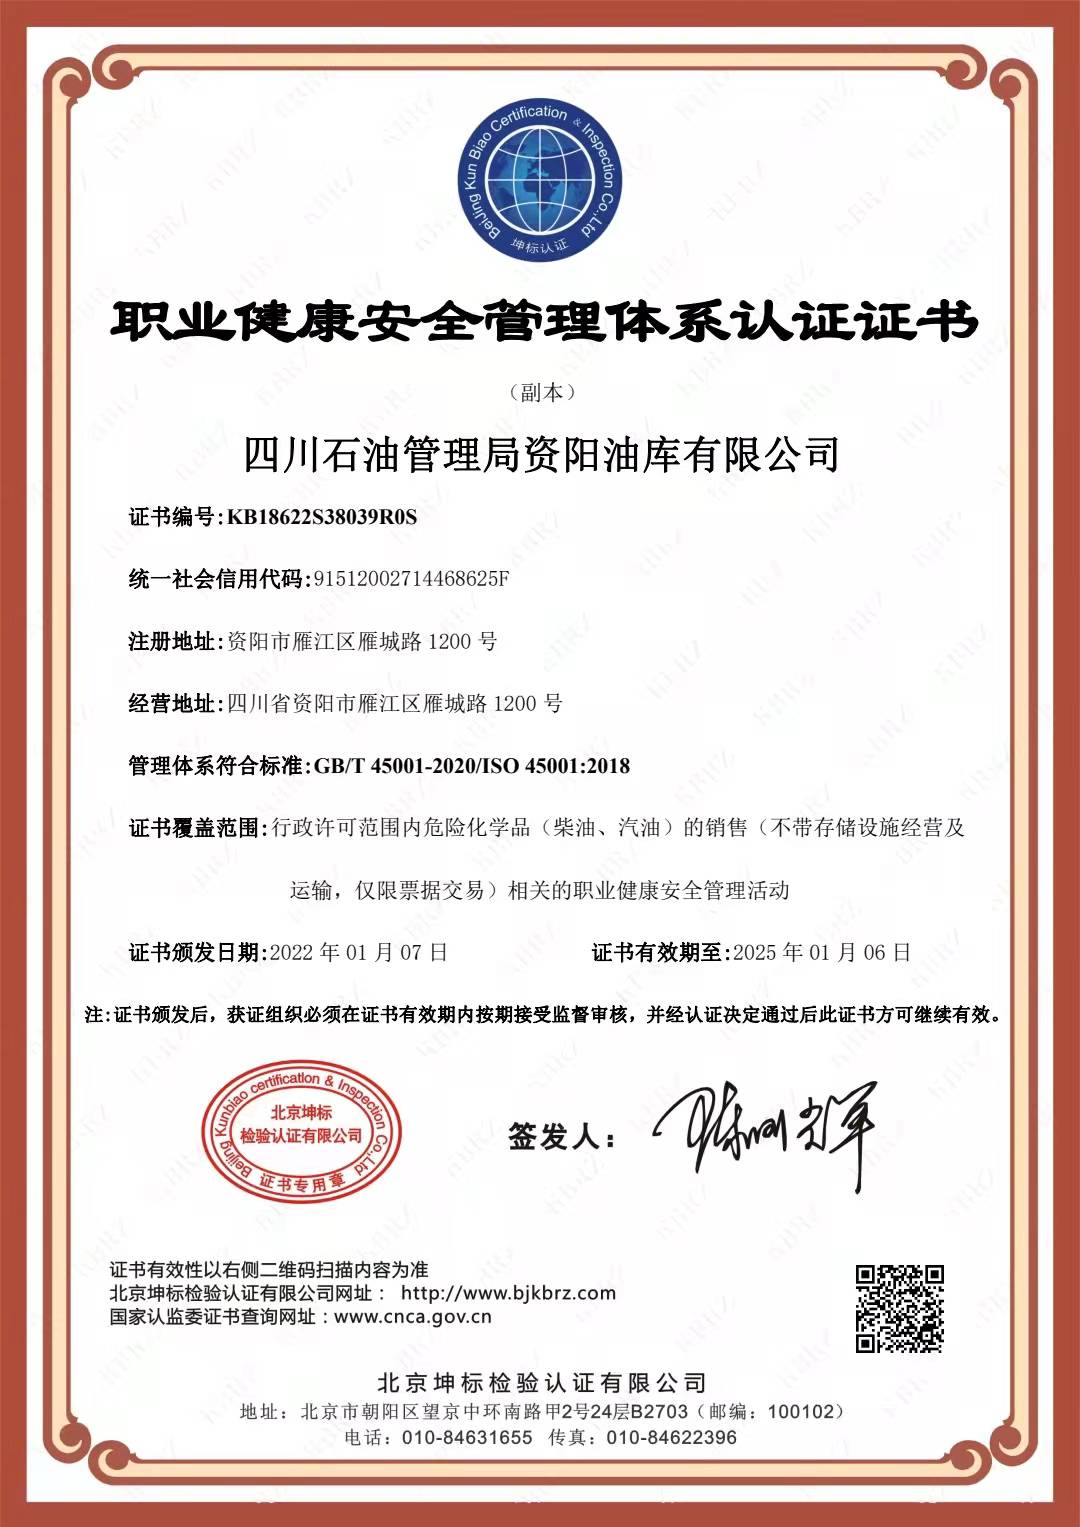 恭喜四川石油管理局资阳油库有限公司顺利通过审核取得ISO9001，ISO45001,ISO14001,三体系认证证书